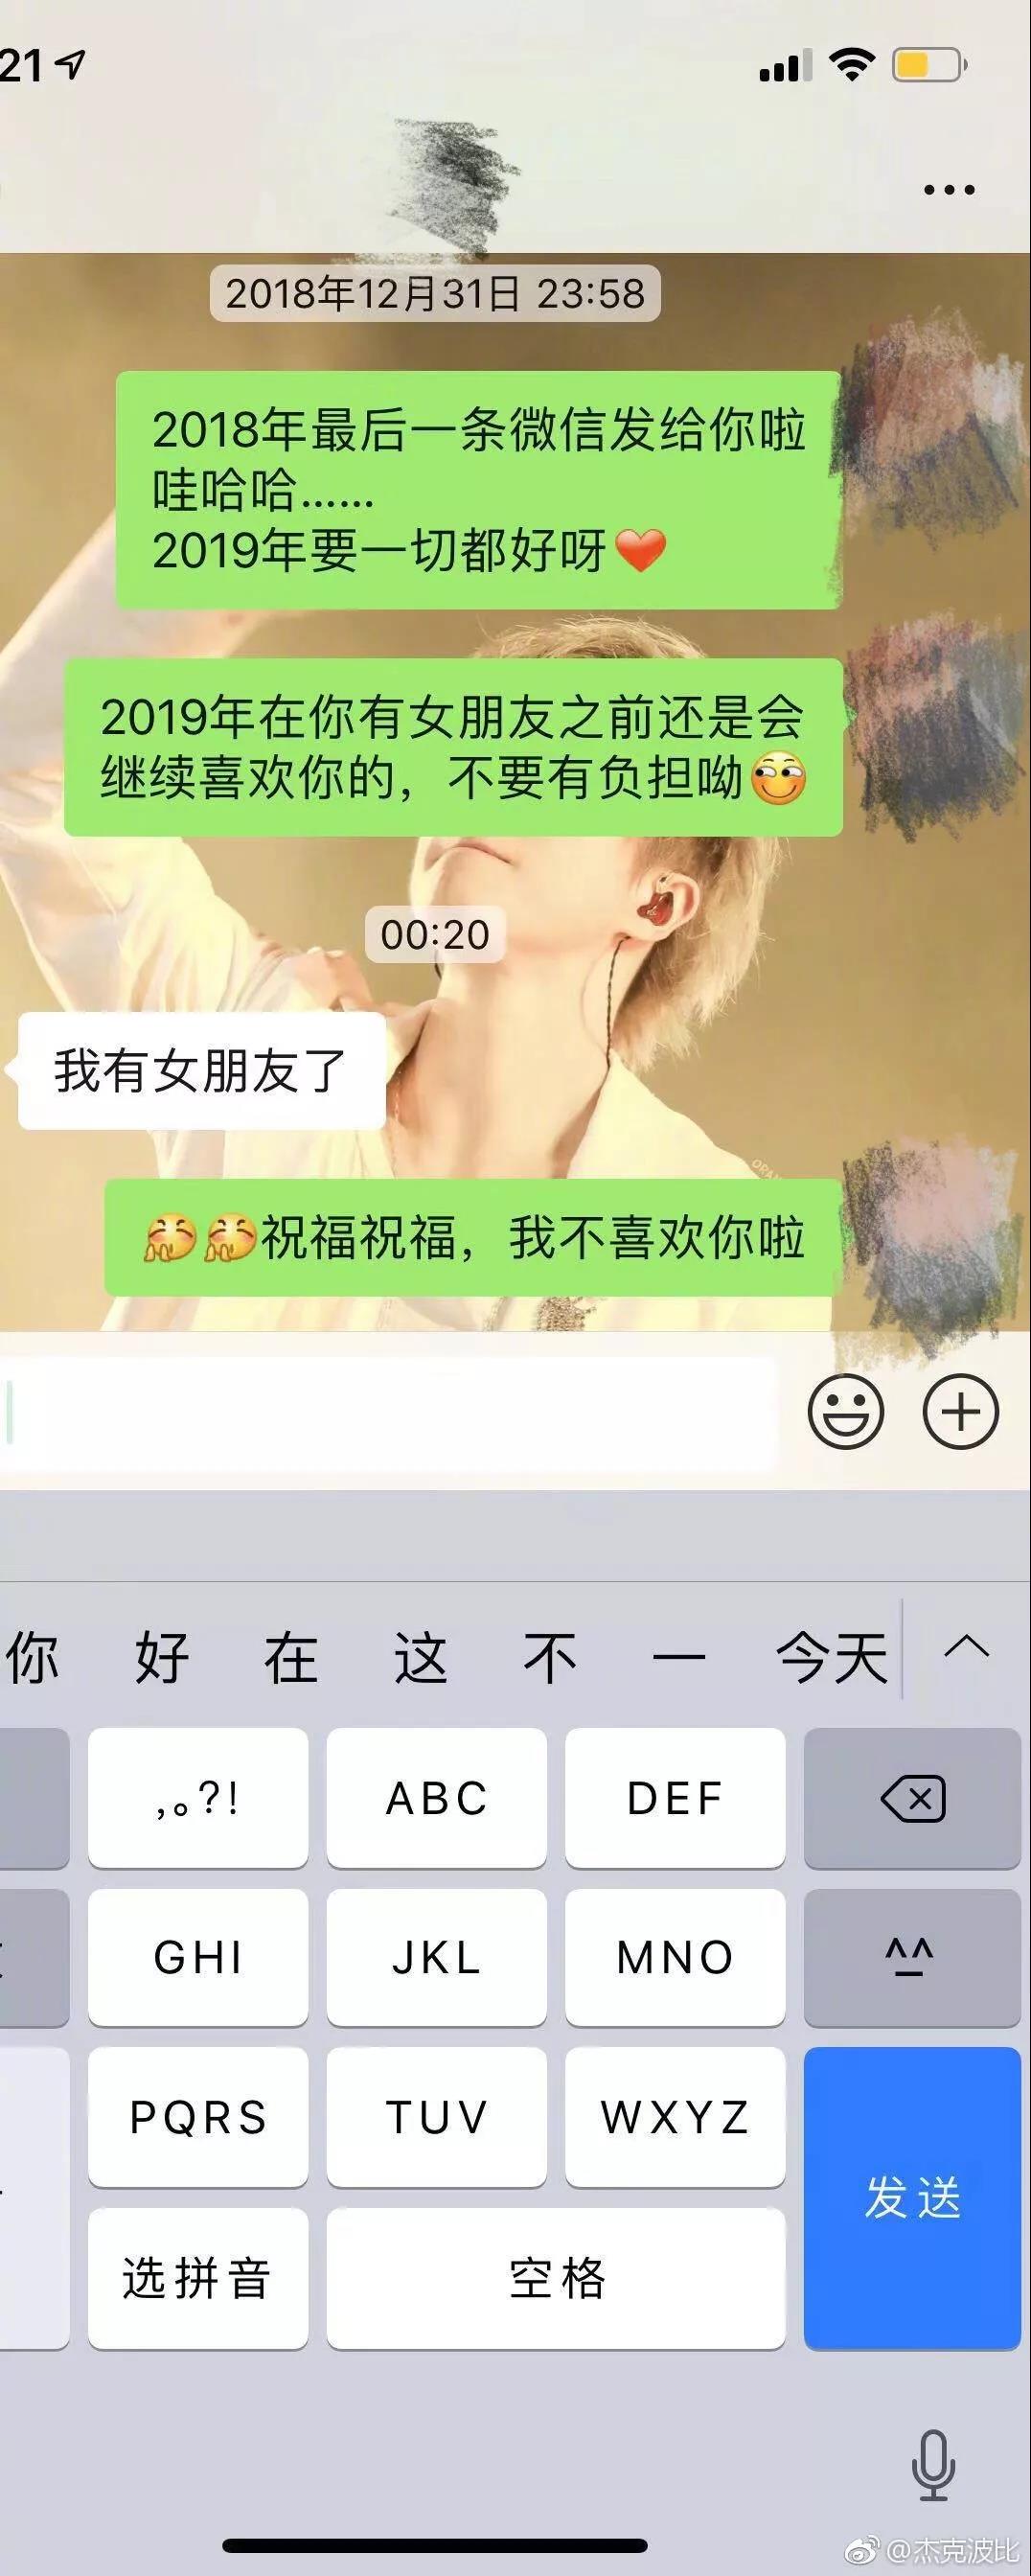 WeChat_Image_20190102113553.jpg